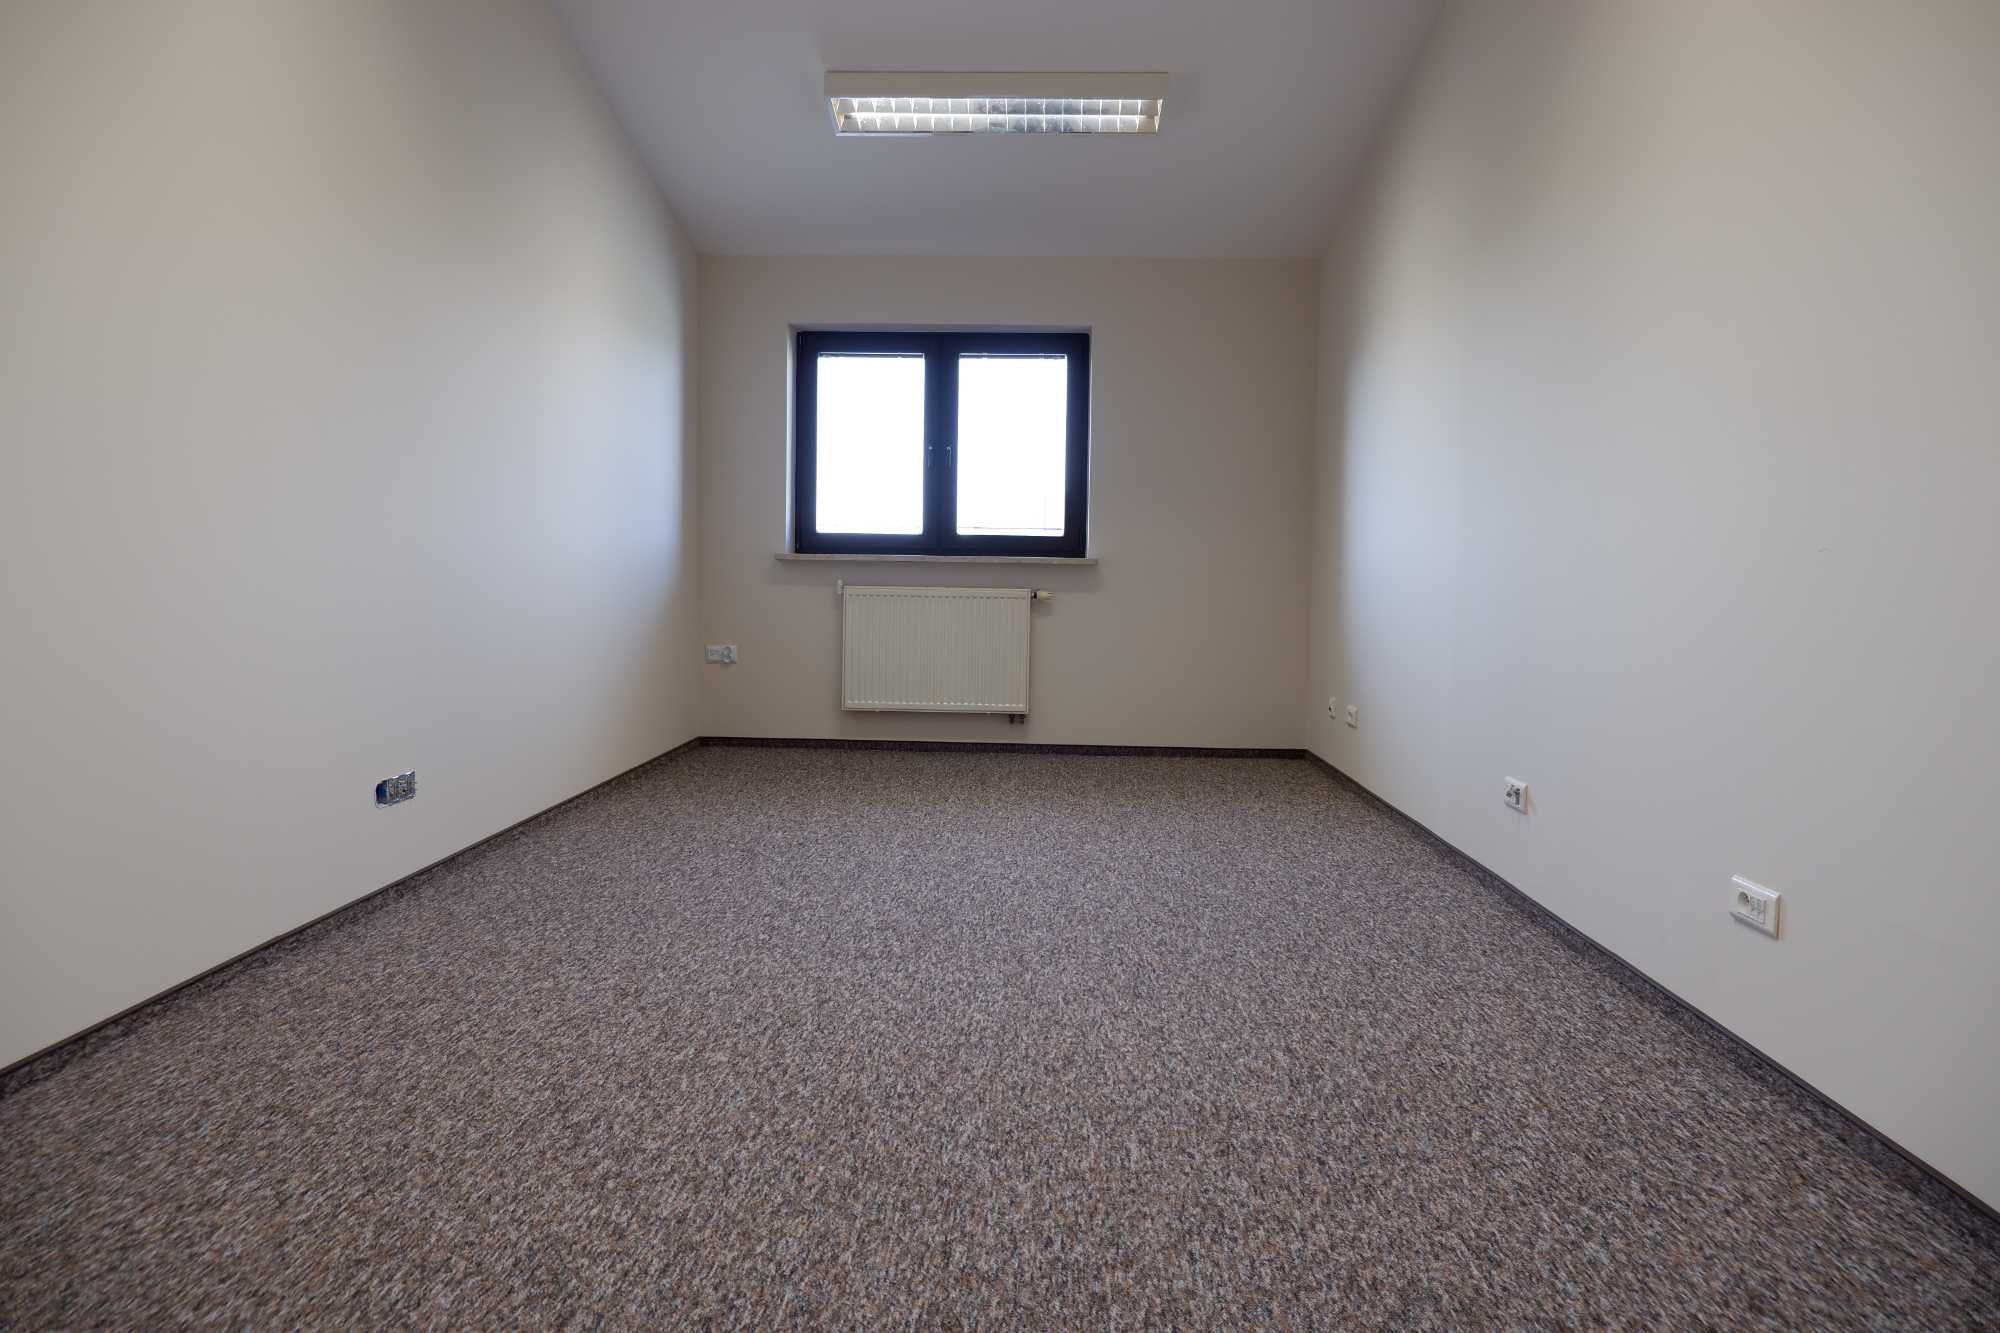 Pokoje biurowe 24 m2 + 18 m2  Konopnica 159C faktycznie Al. Kraśnicka